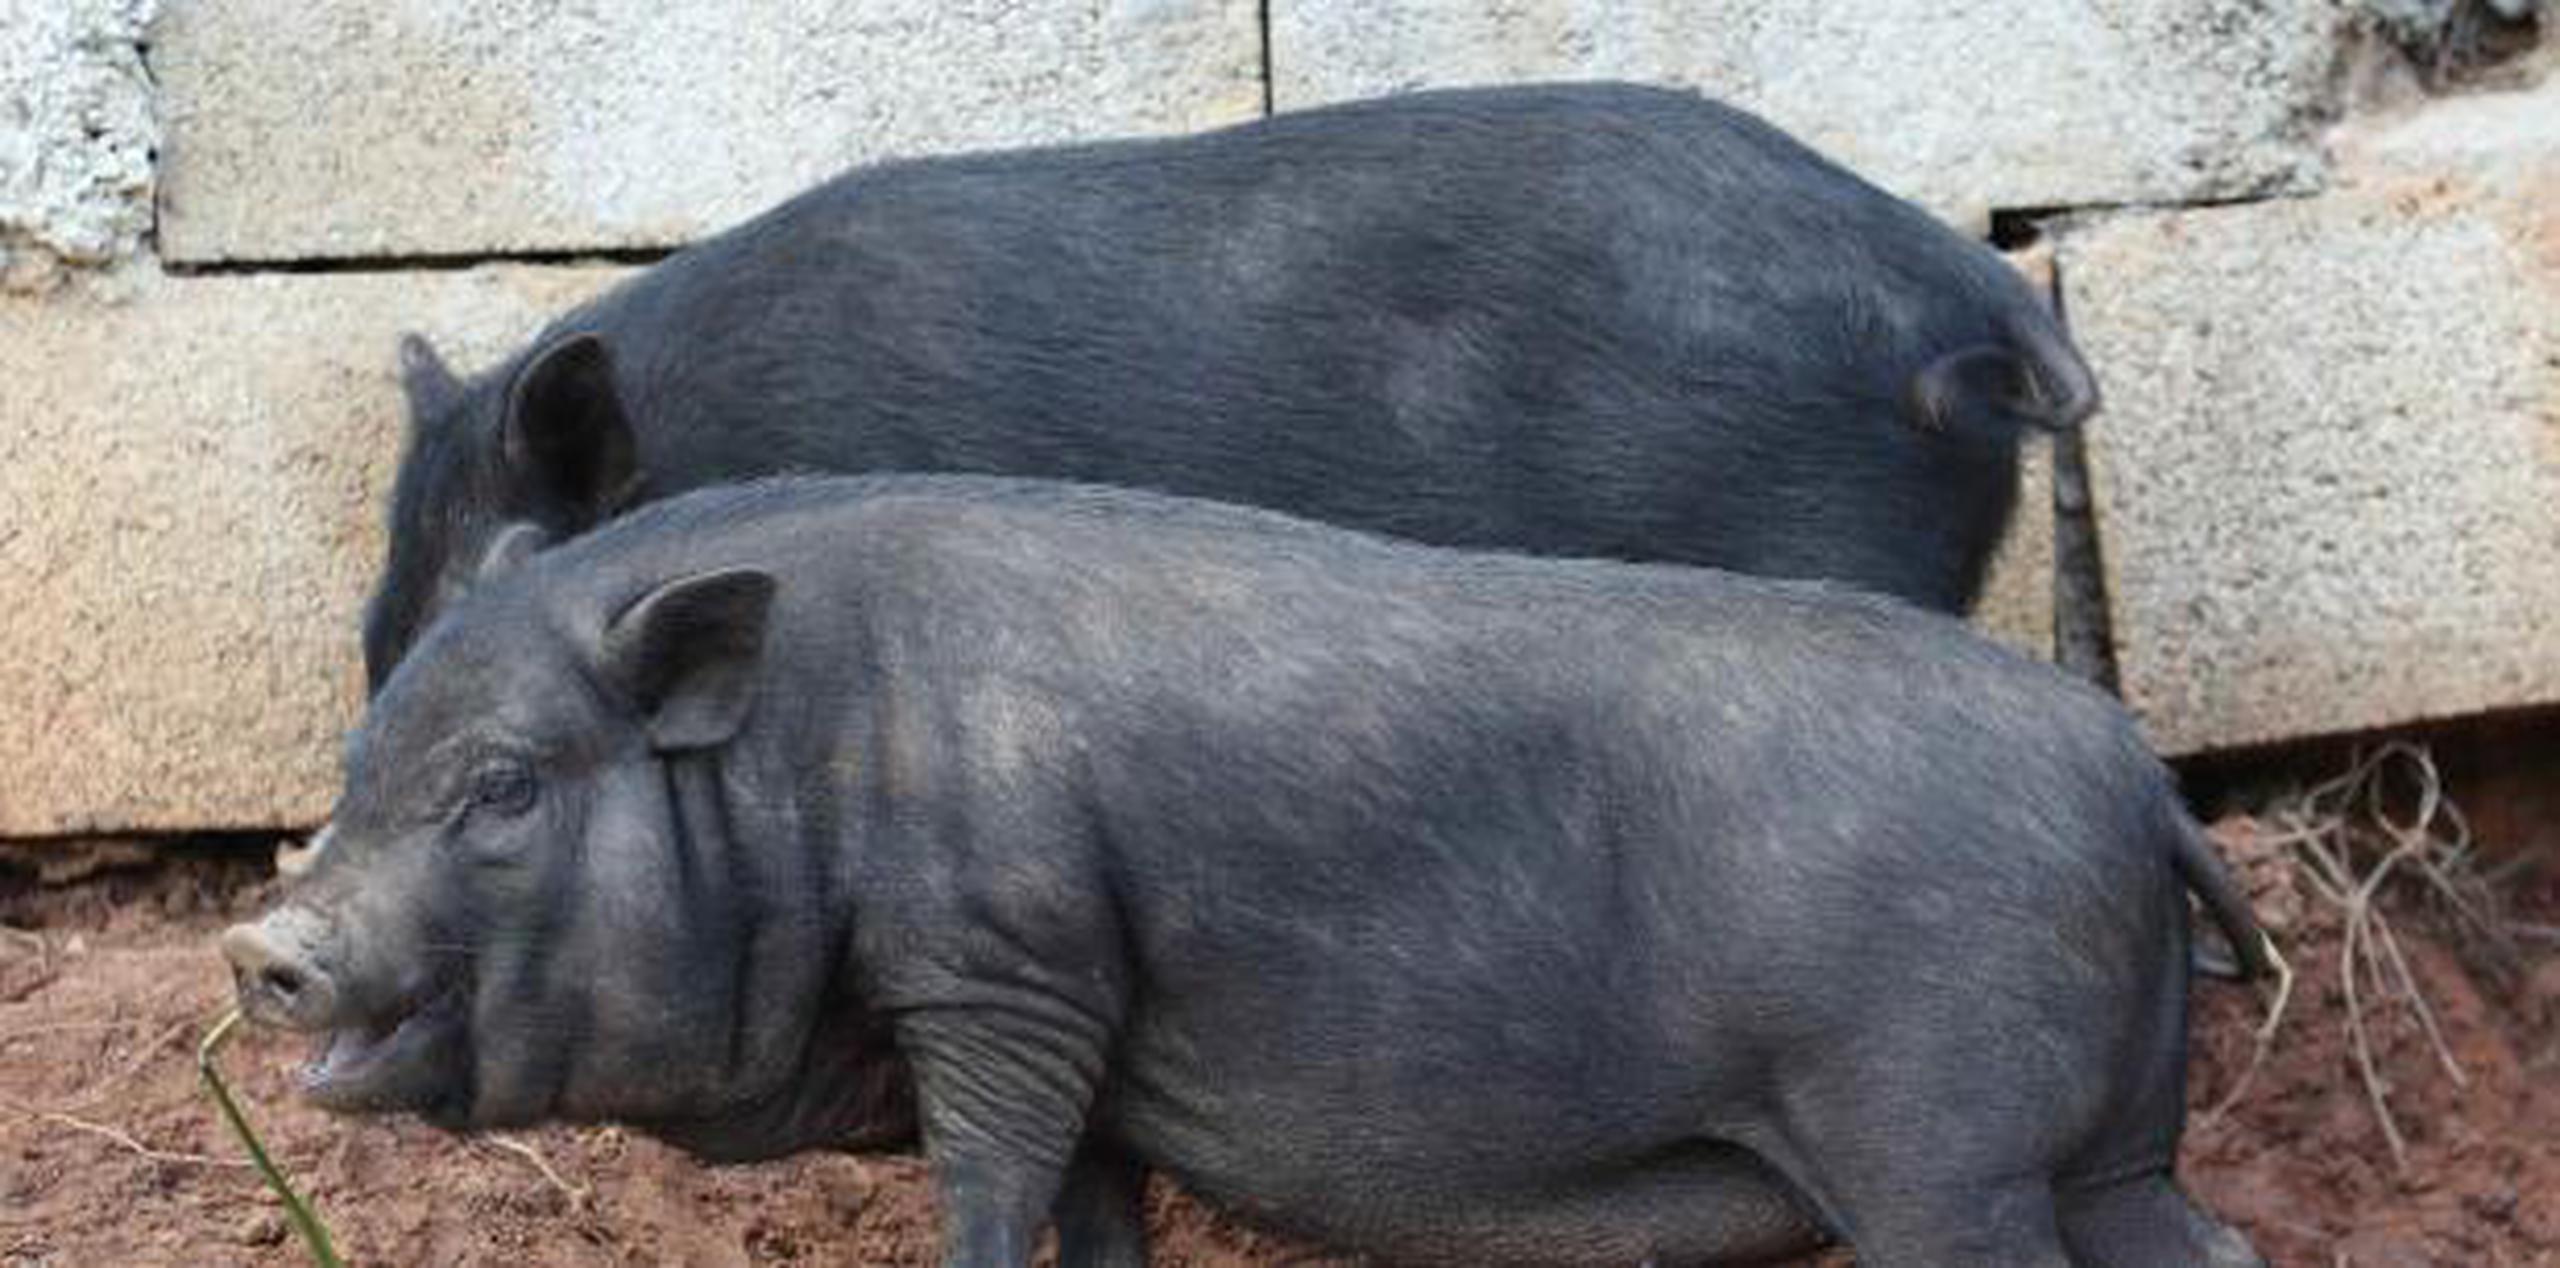 Estos cerdos avistados en Cantera, según las observaciones de diversos especialistas, son animales "realengos" y domesticados, según la funcionaria gubernamental. (Archivo)